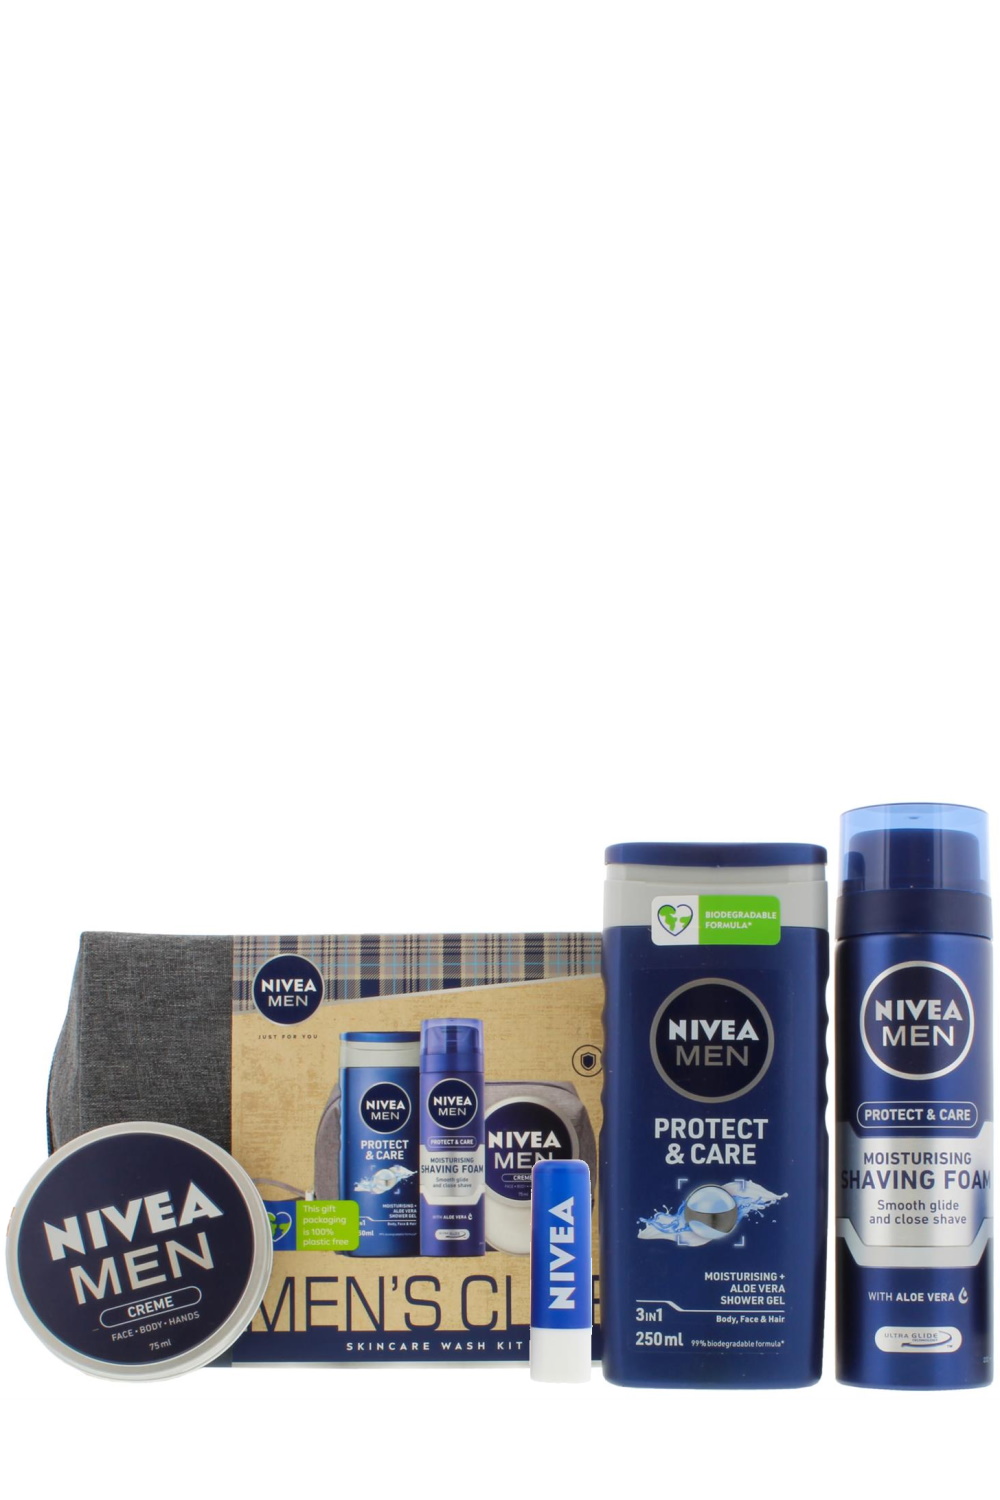 Nivea Men's Club Skincare Wash Kit – Stylishcare